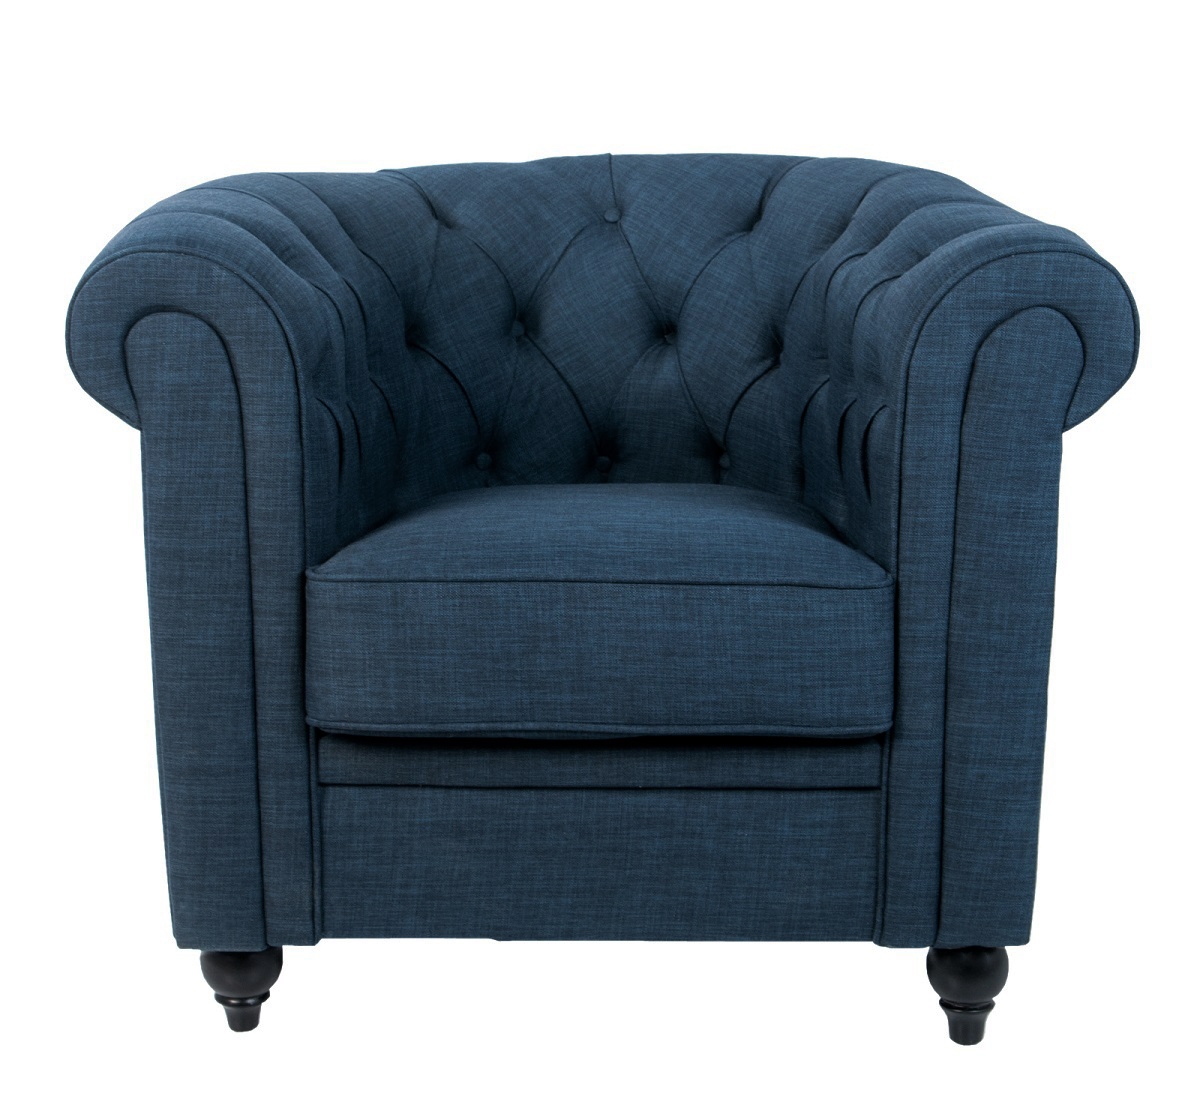 Низкие кресла для дома Nala blue